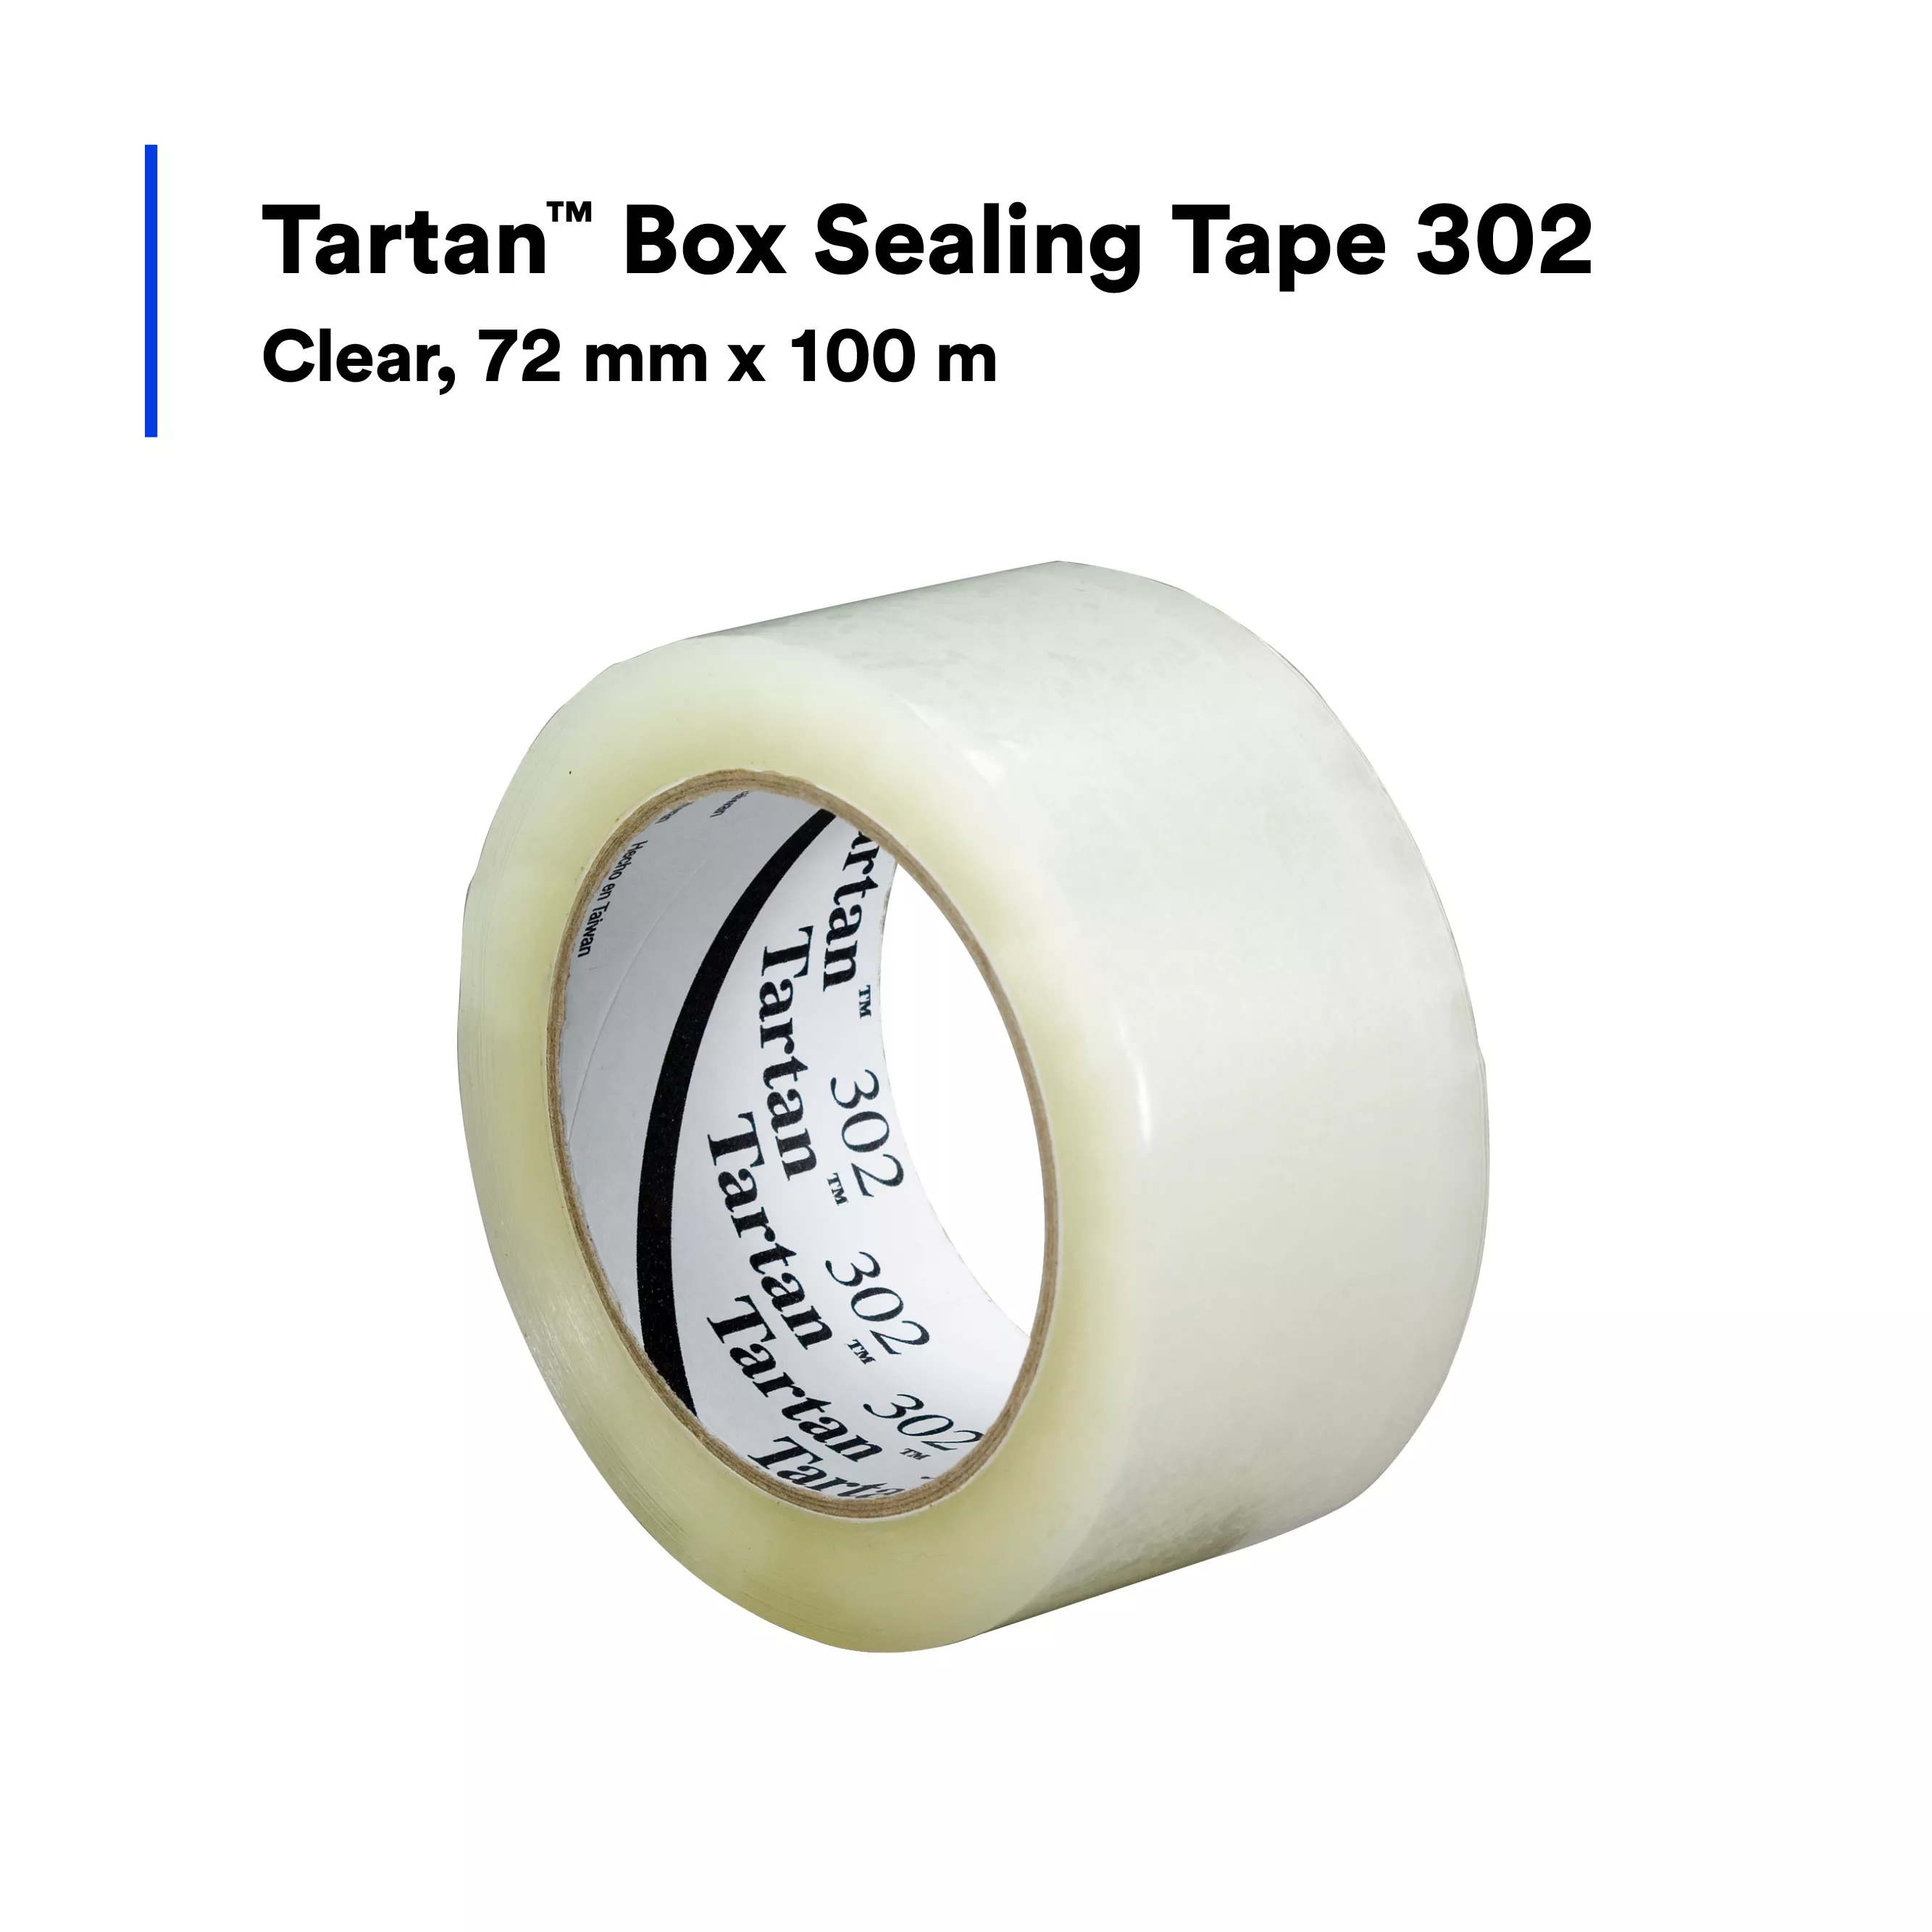 Tartan™ Box Sealing Tape 302, Clear, 72 mm x 100 m, 24 Rolls/Case